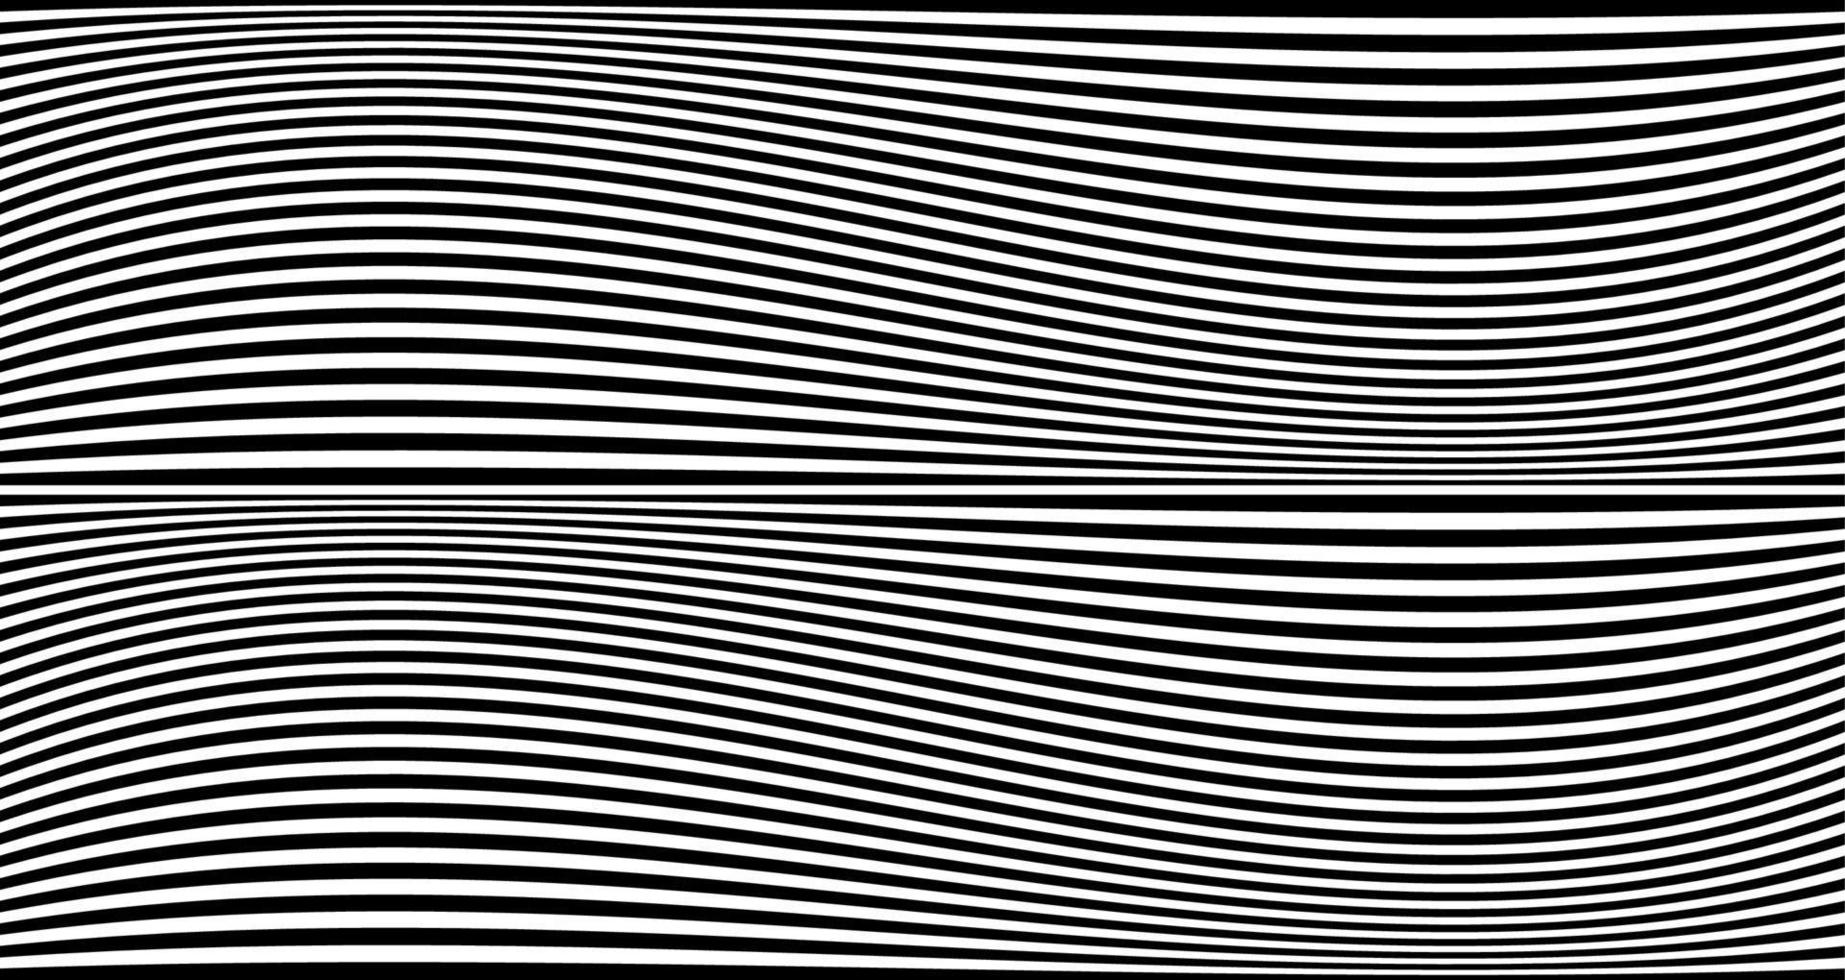 banner a strisce nere ondulate. linee di zebra dell'Africa psichedelica. modello astratto. trama con curve a righe ondulate. sfondo di arte ottica. design ondulato in bianco e nero, illustrazione vettoriale modello ipnotico